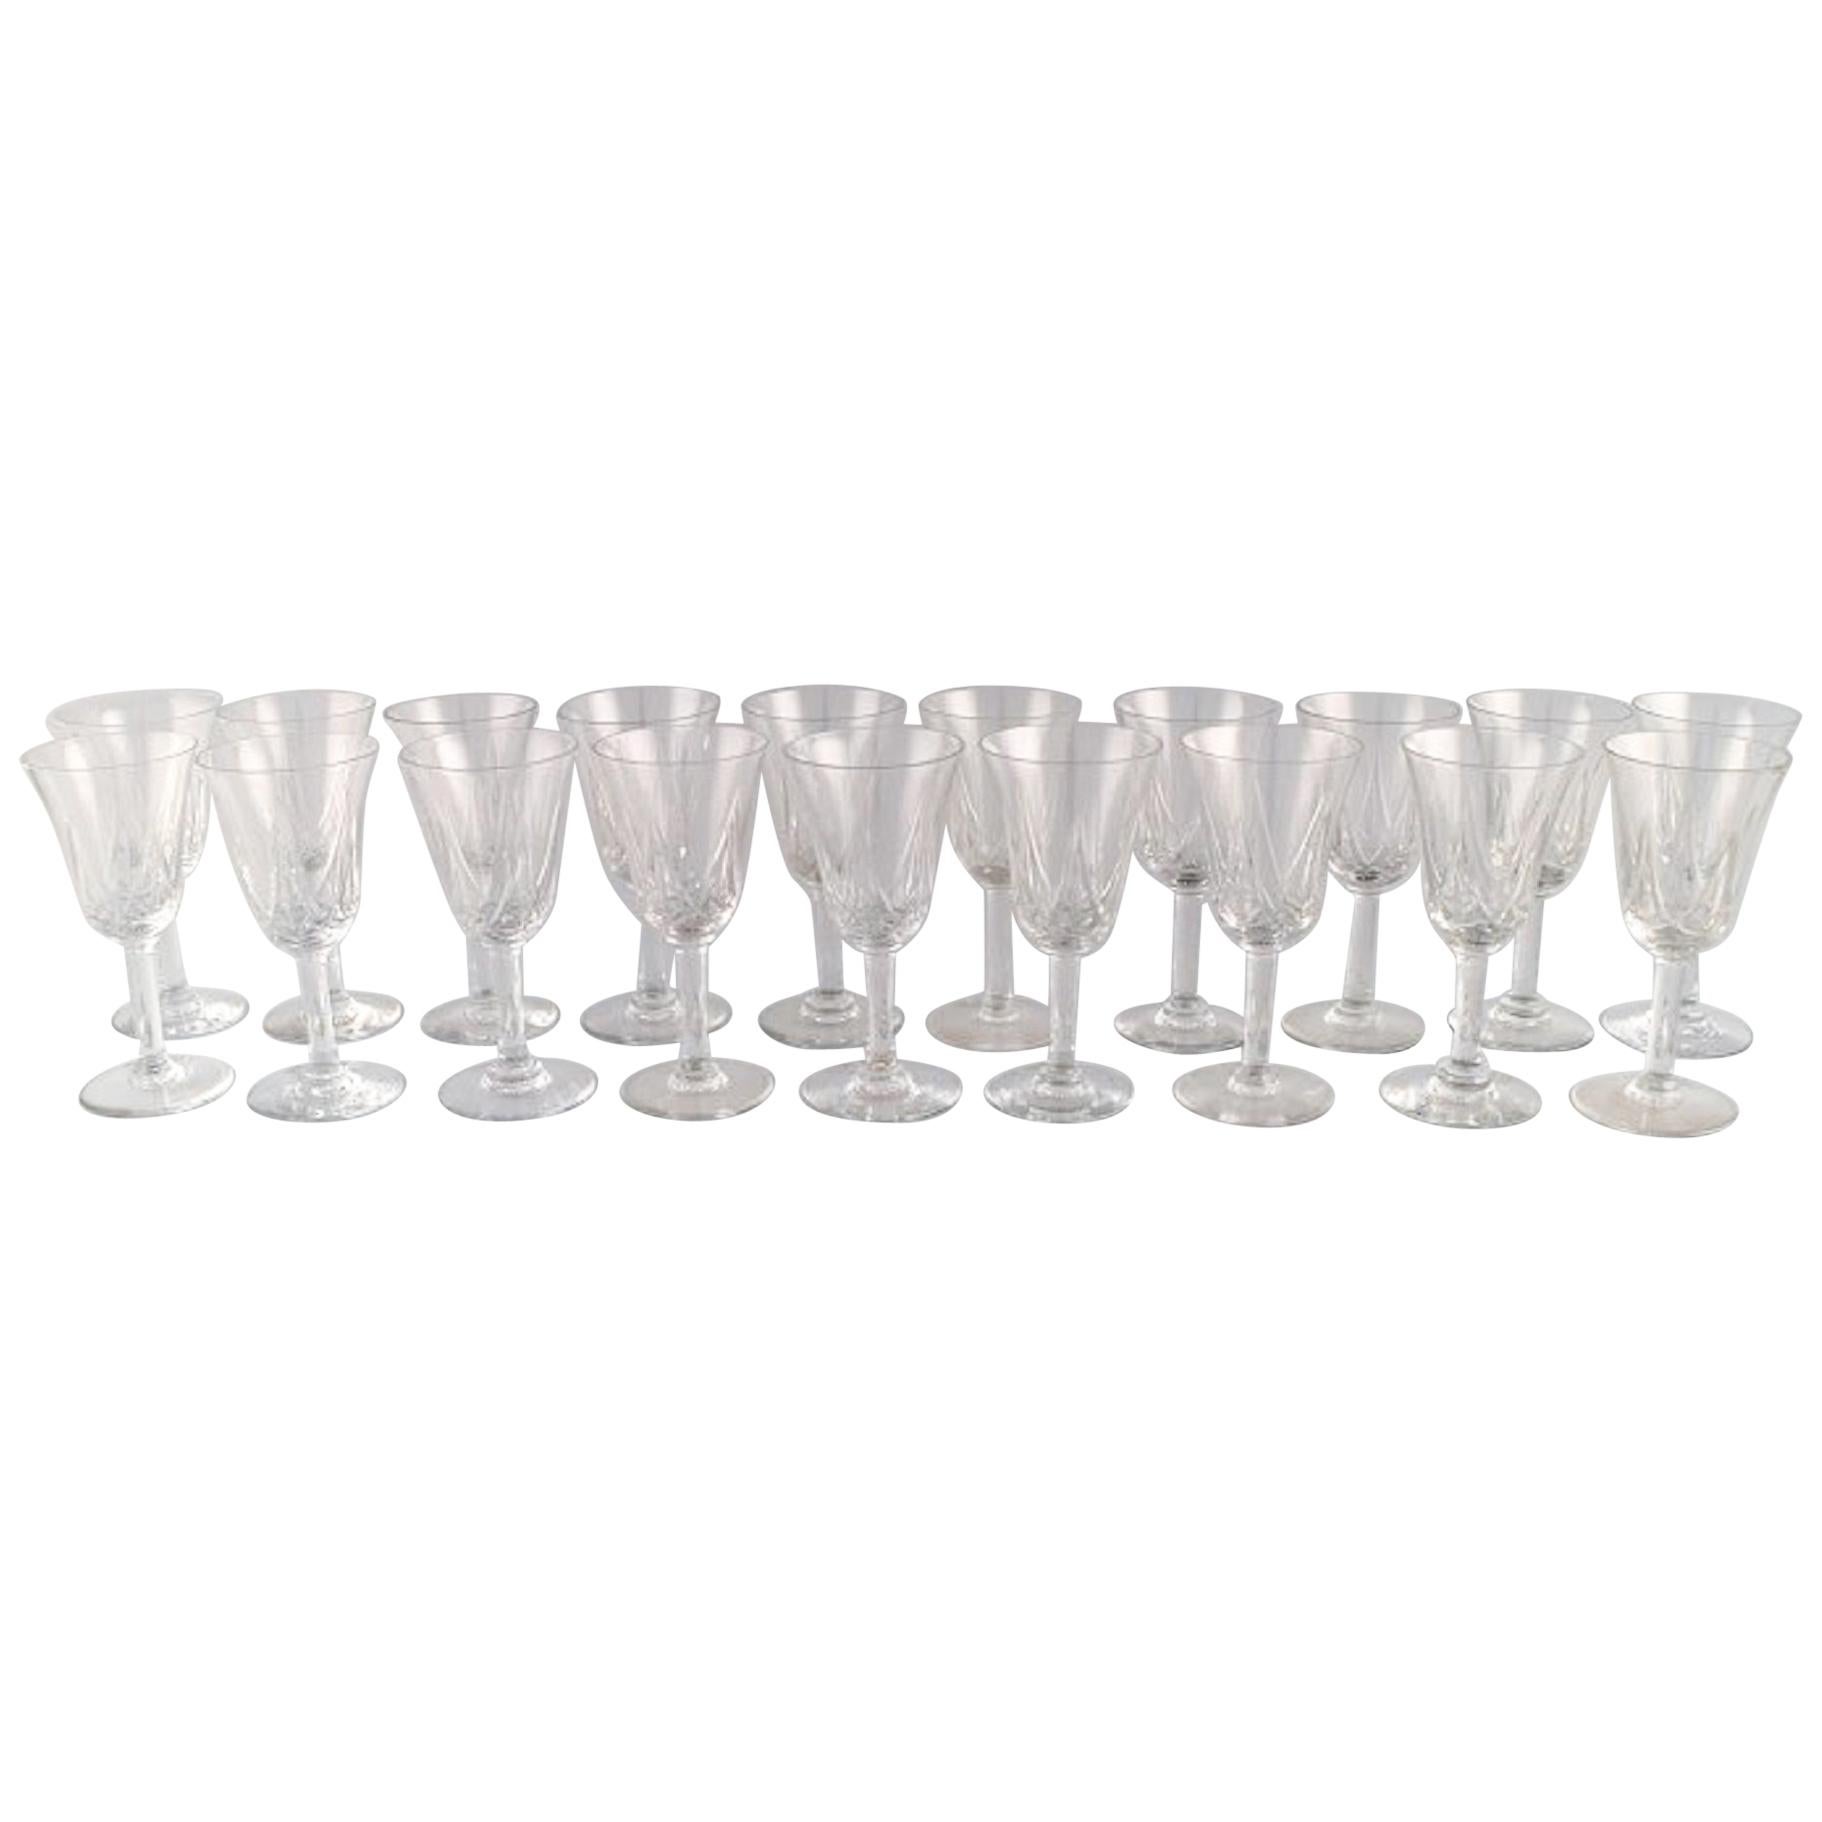 Verres de St. Louis, Belgique, 19 verres en cristal soufflé à la bouche, années 1930-1940